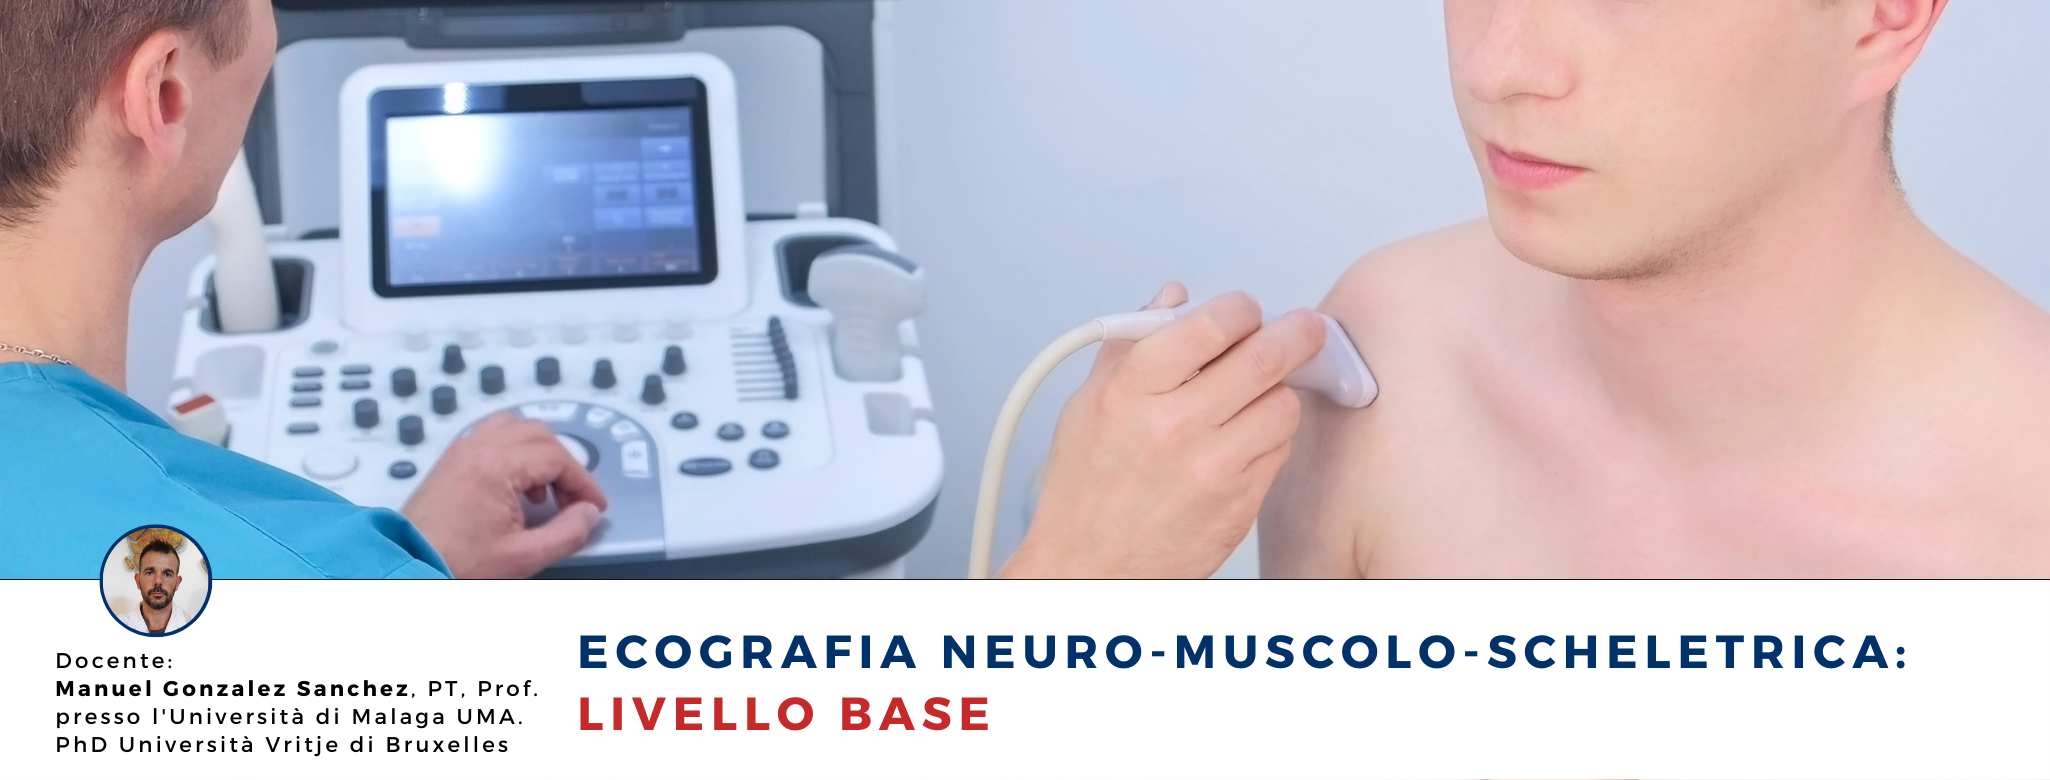 Ecografia Neuro-Muscolo-Scheletrica : Livello Base